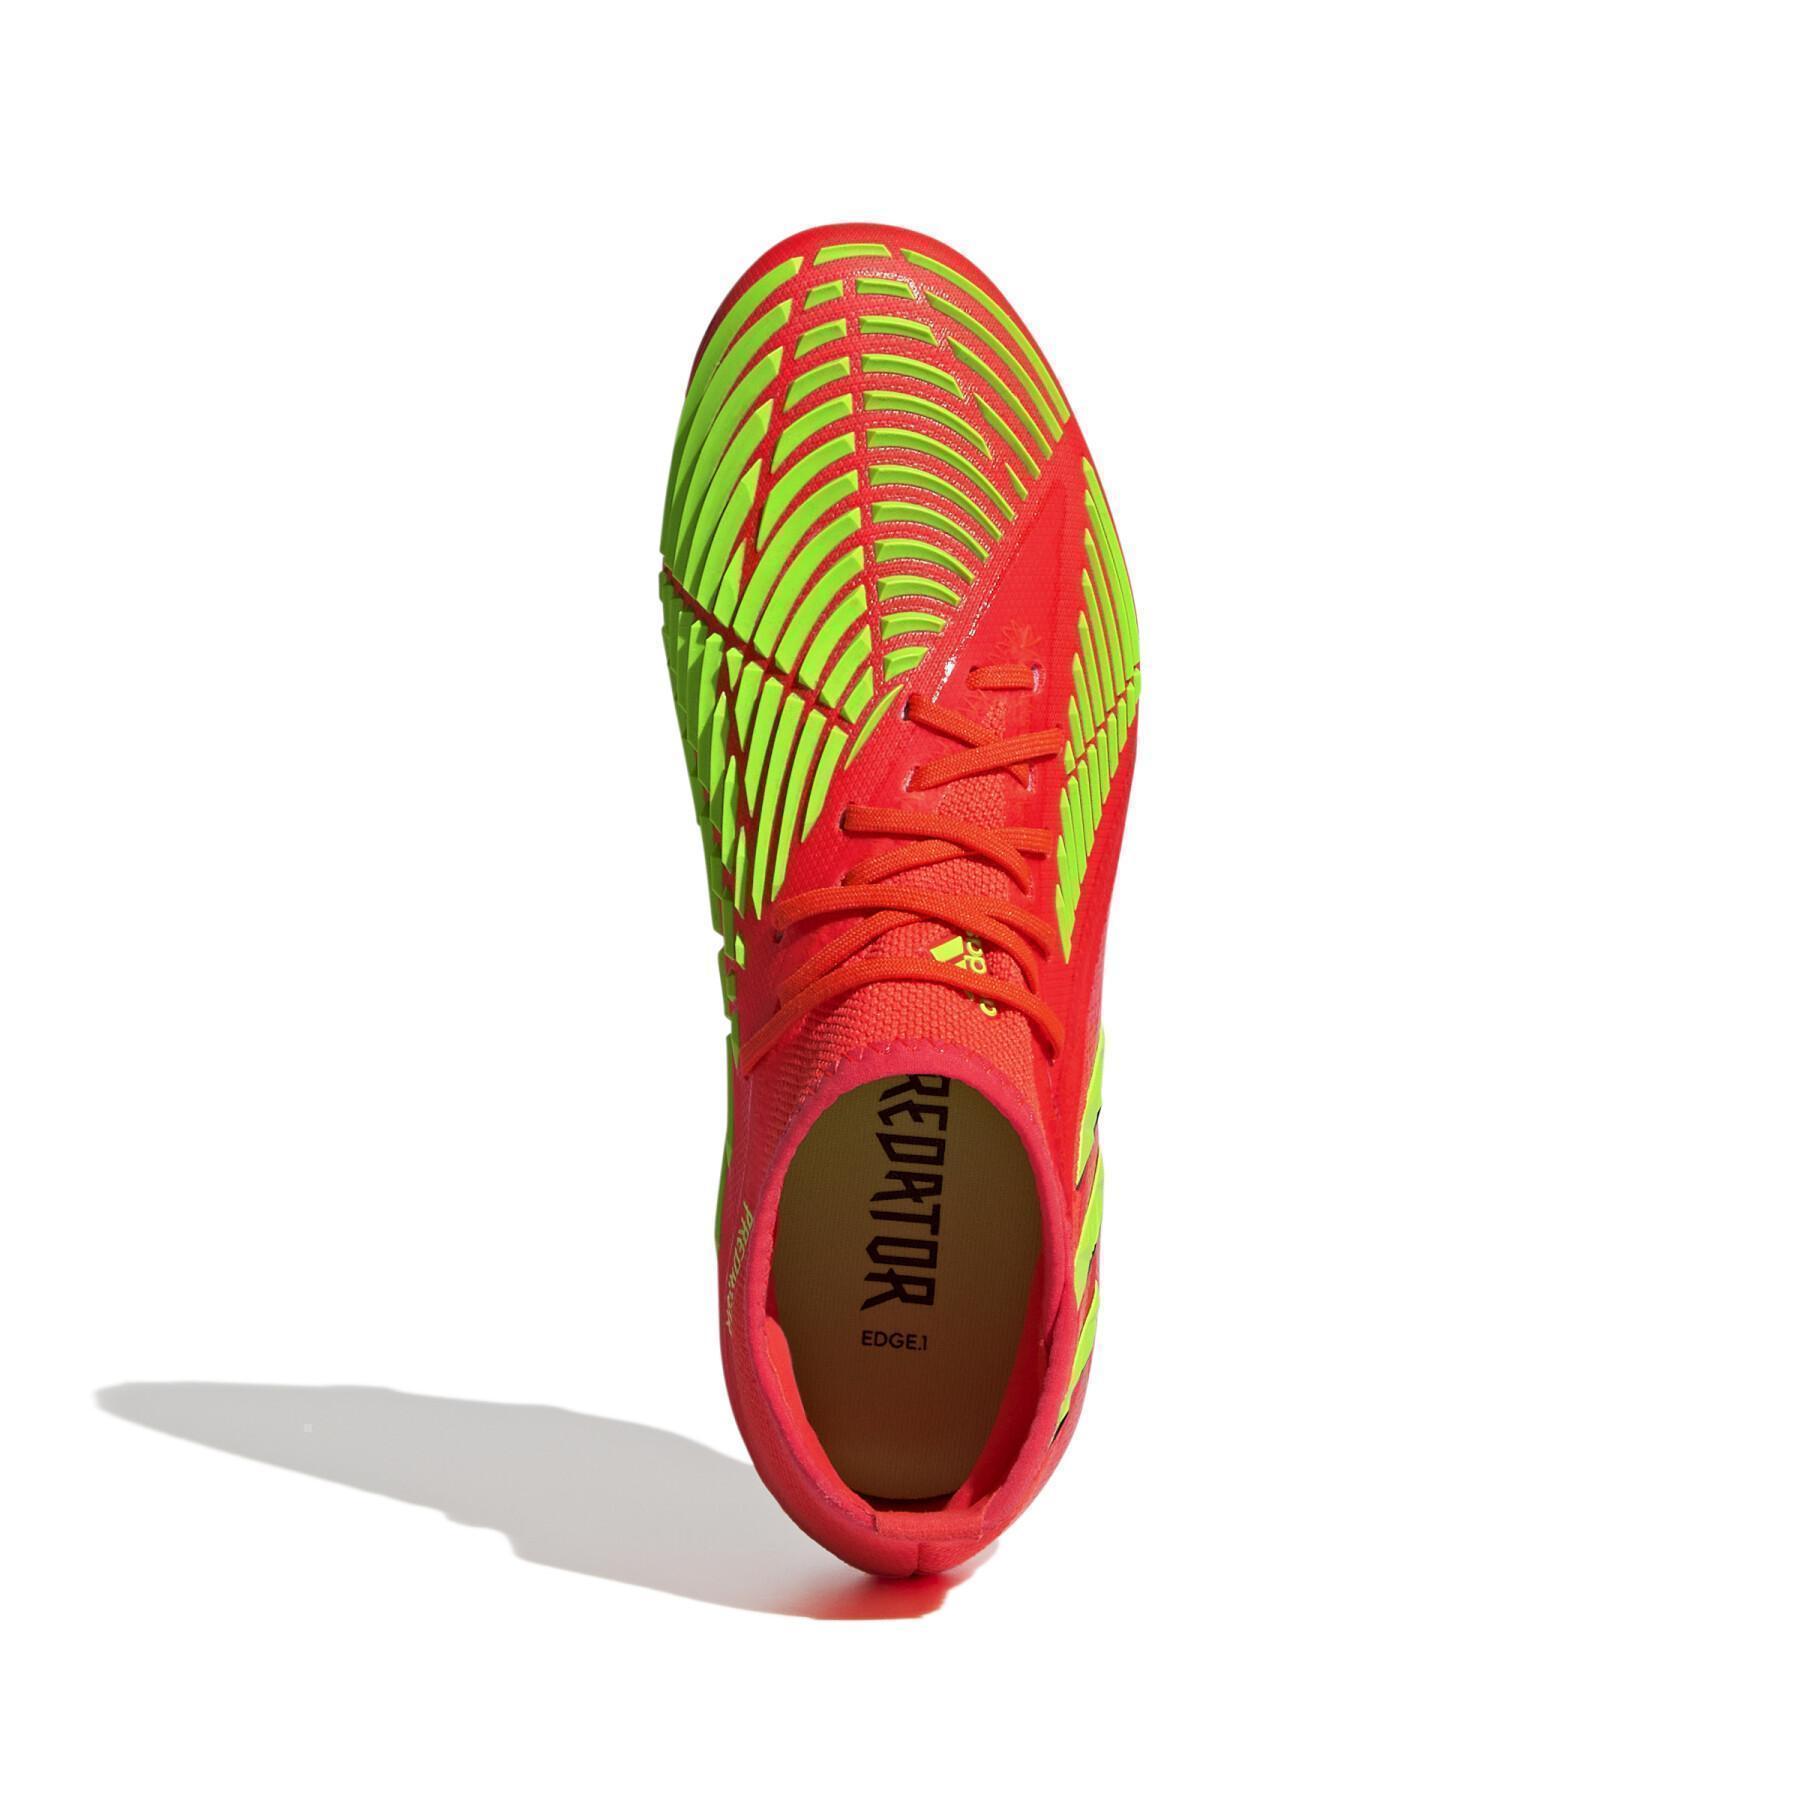 Children's soccer shoes adidas Predator Edge.1 FG - Game Data Pack